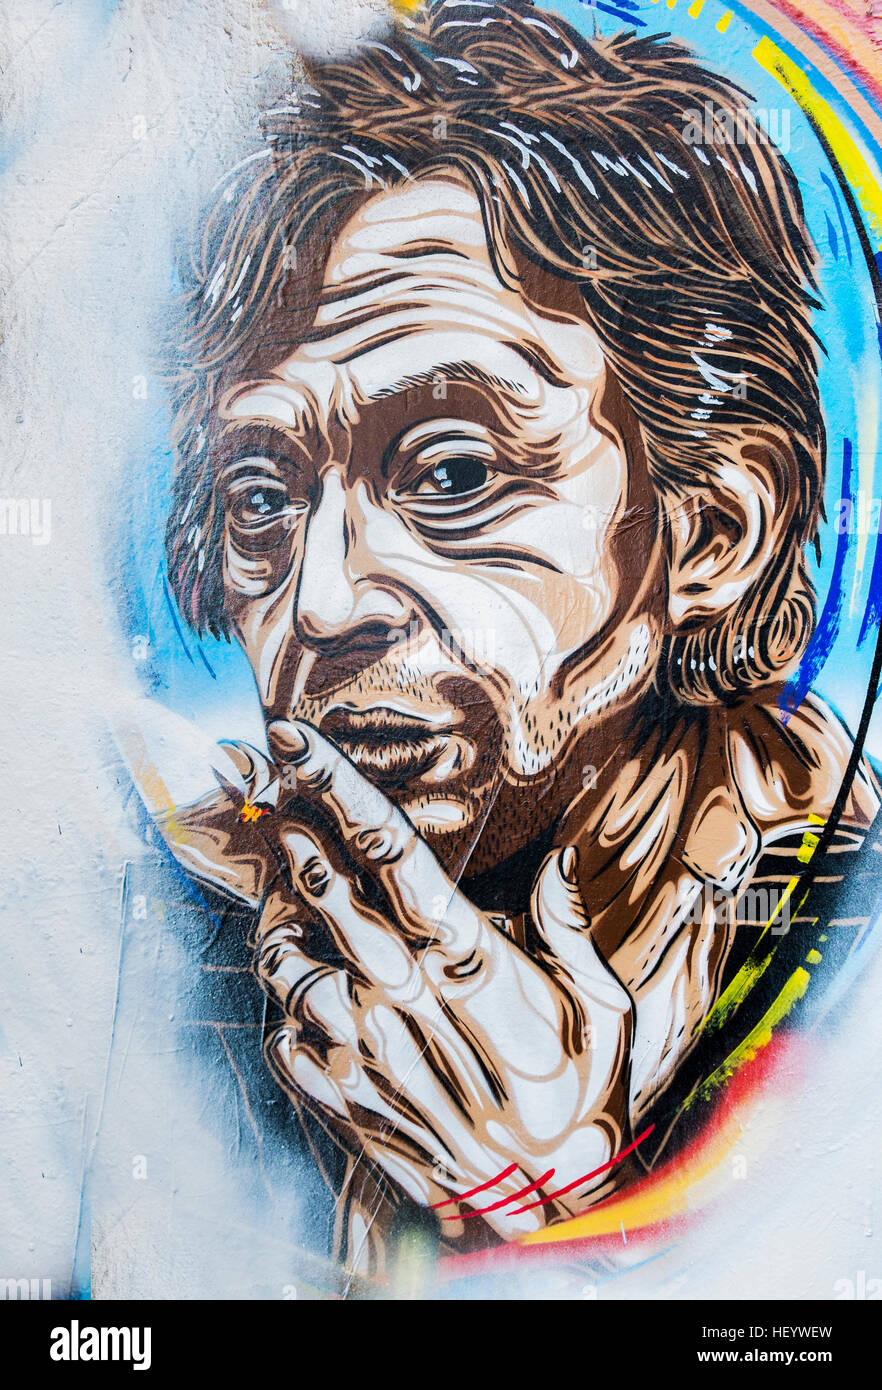 Schablone Graffito zeigt französische Komponist und Sänger Serge gainsbourg Stockfoto